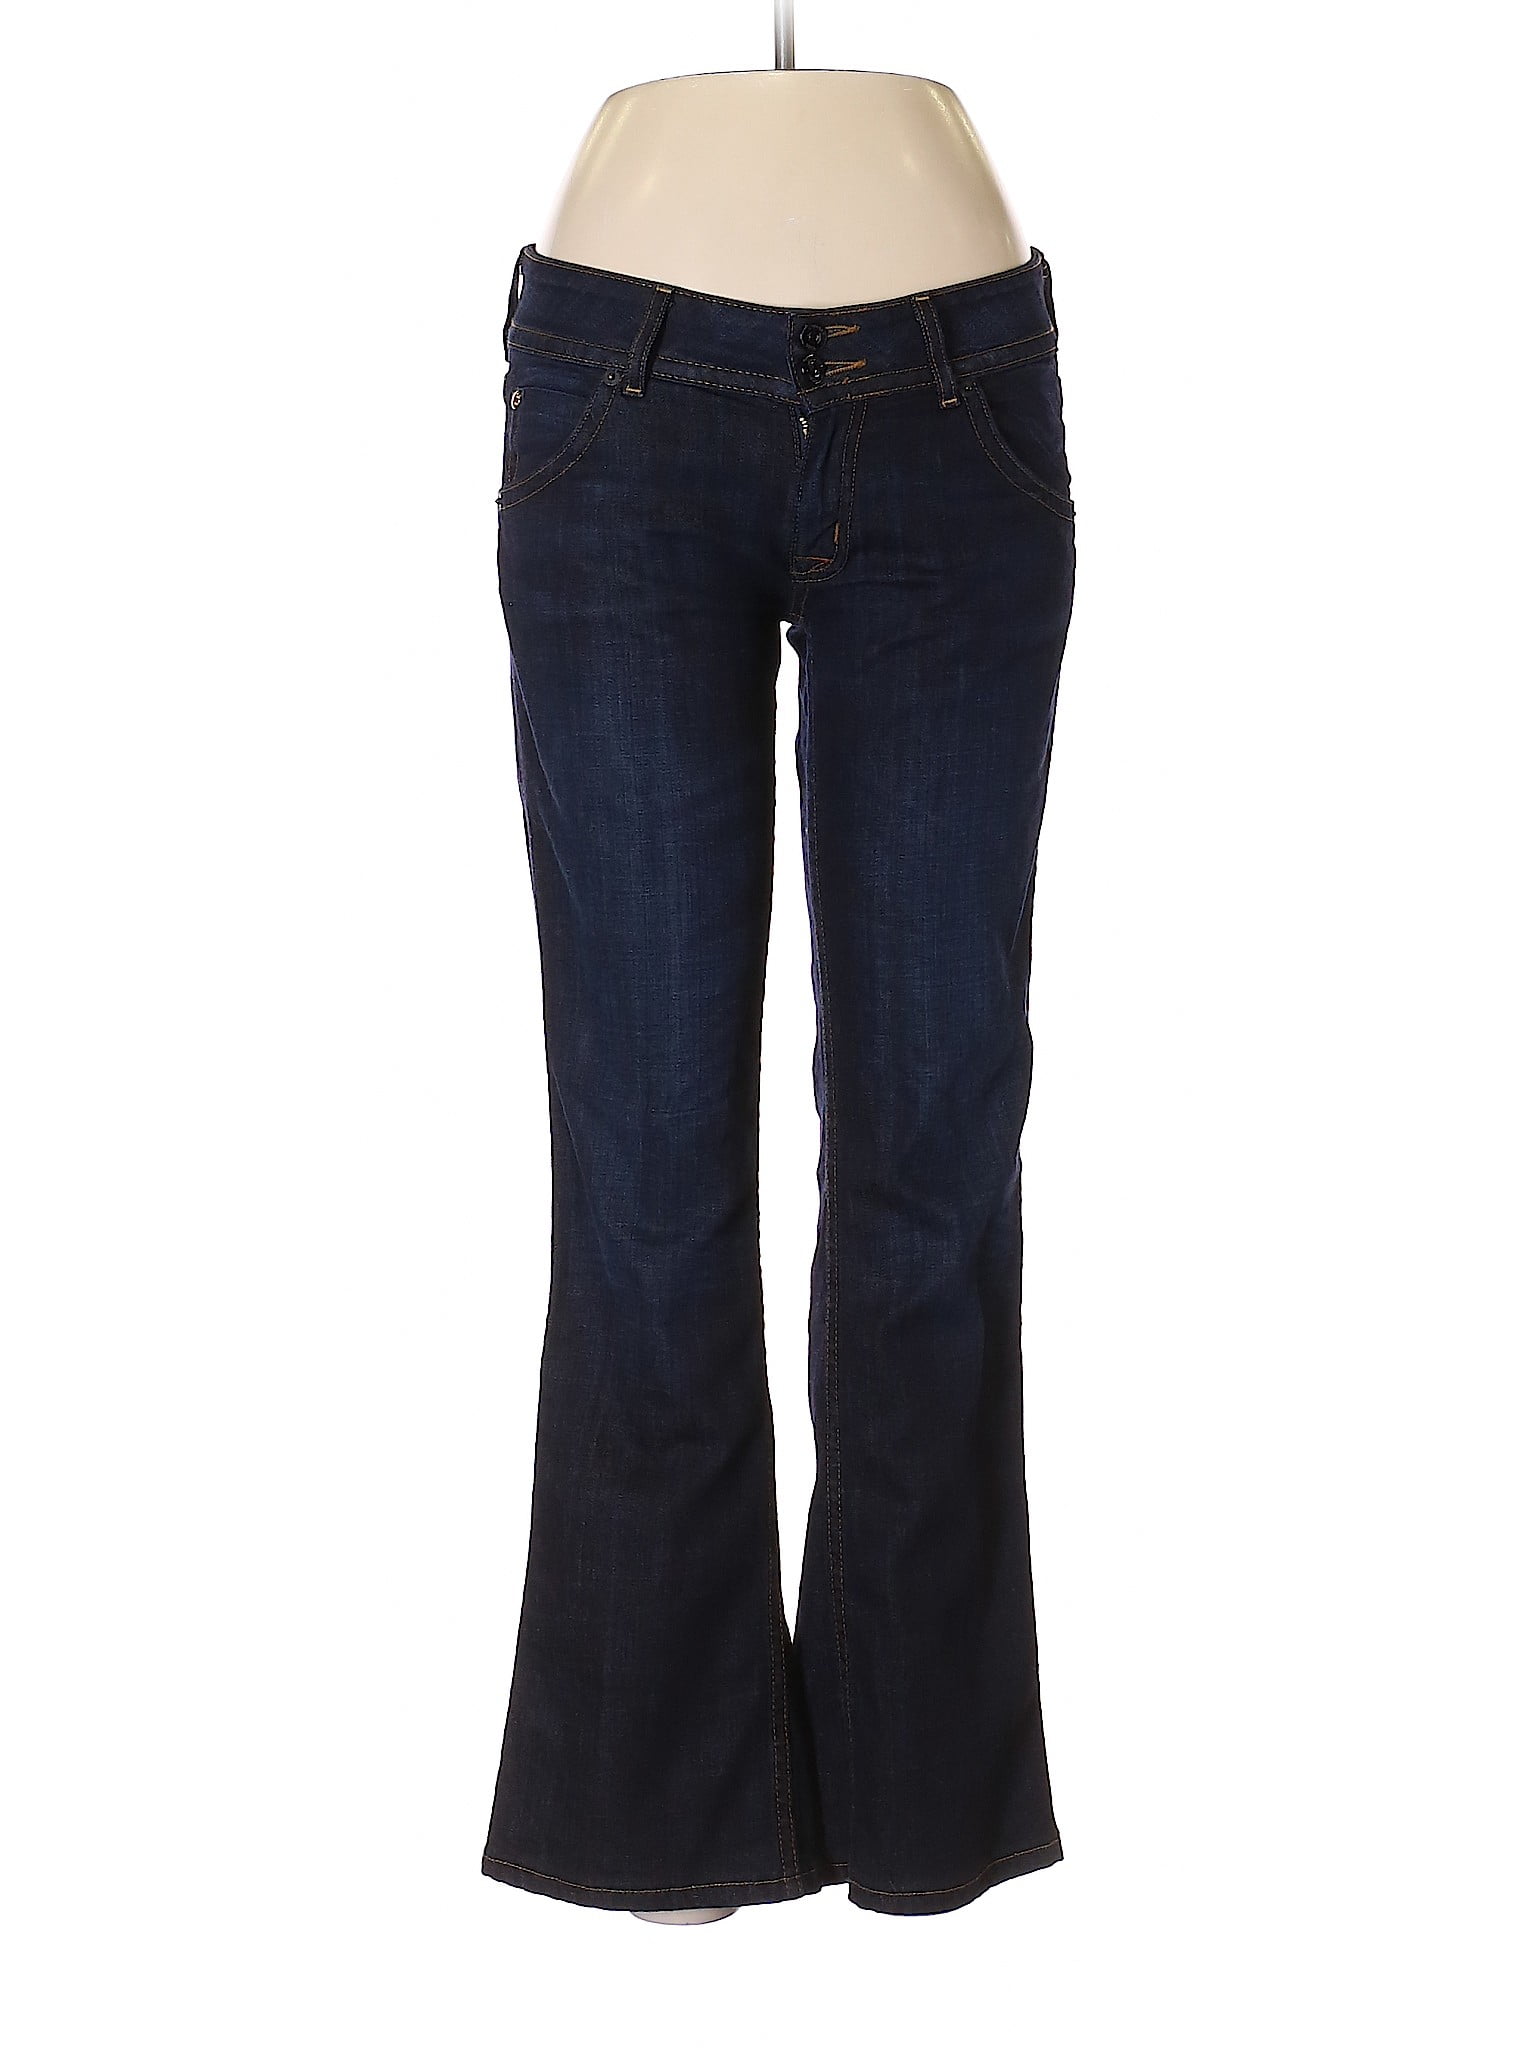 Hudson Jeans - Pre-Owned Hudson Jeans Women's Size 28W Jeans - Walmart ...